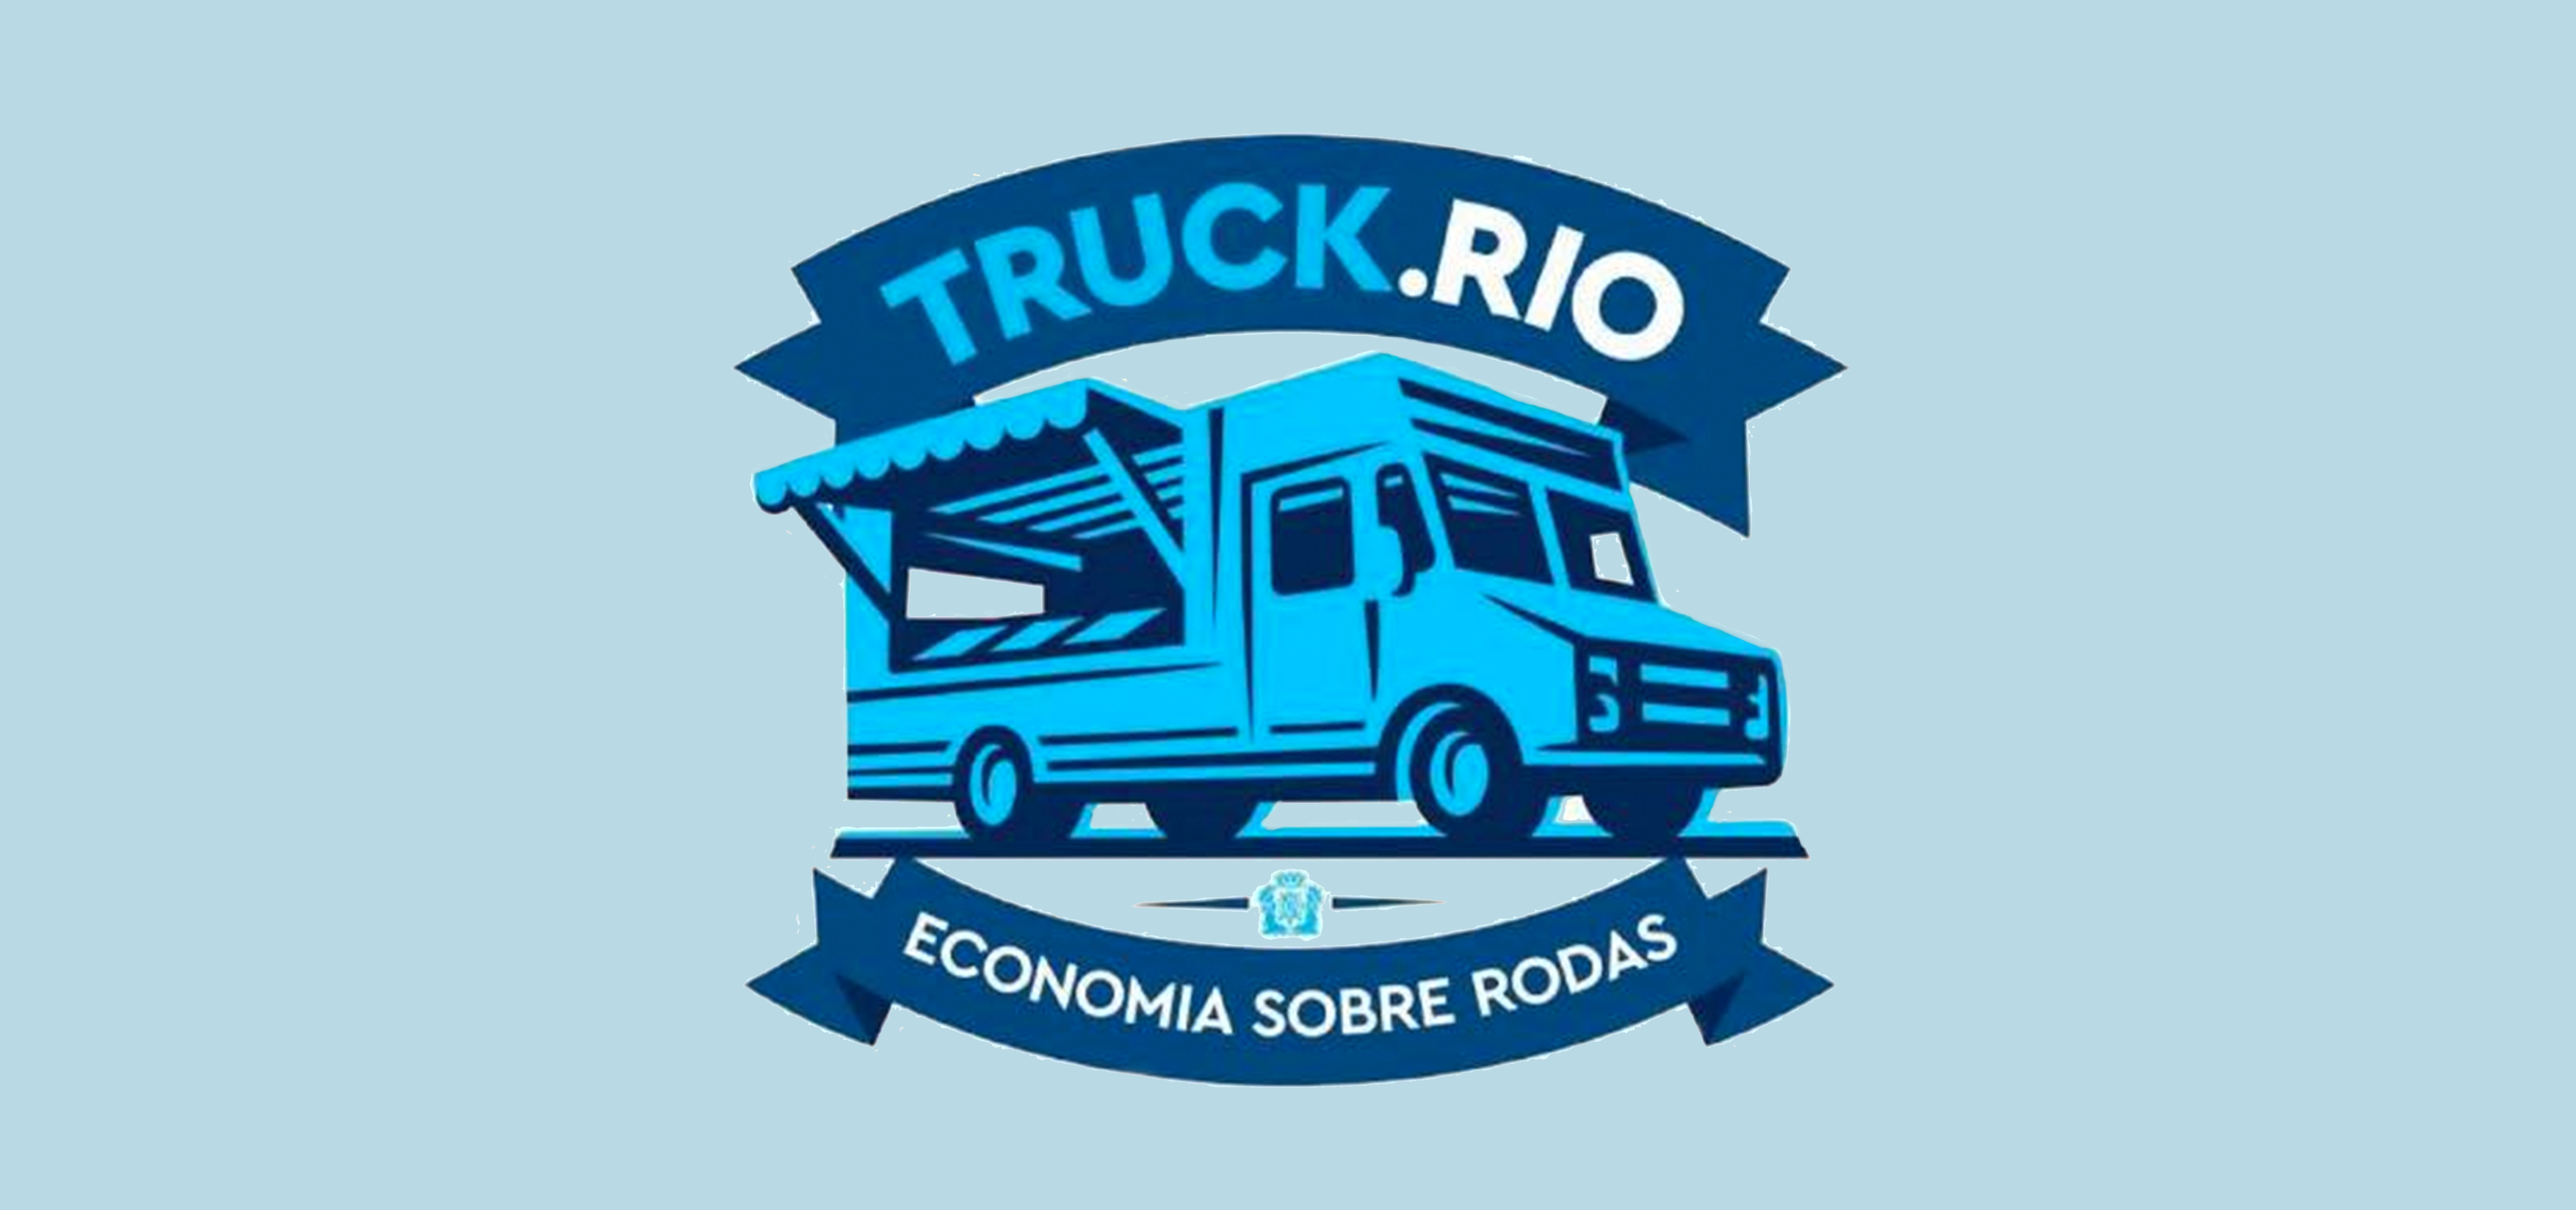 ECONOMIA SOBRE RODAS - TRUCK RIO